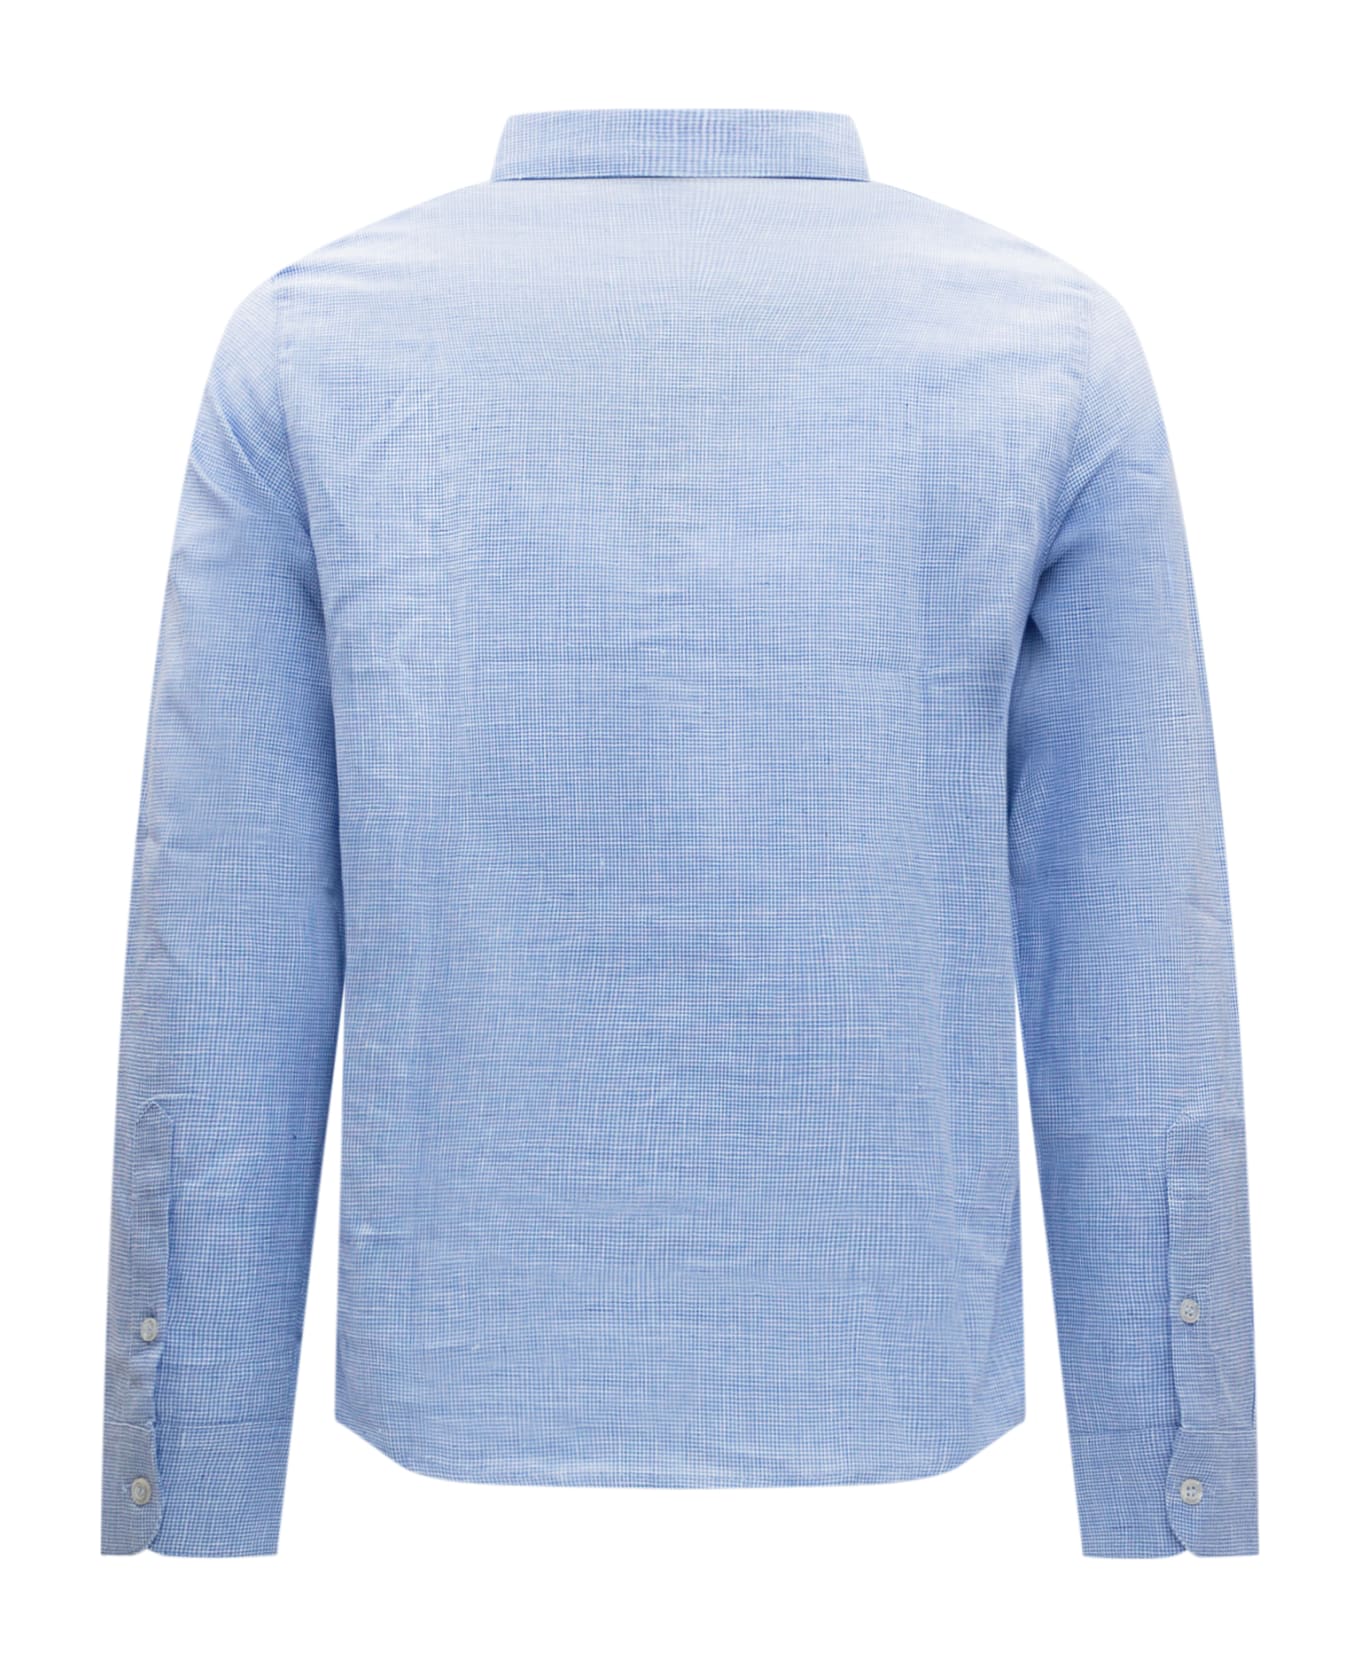 Emporio Armani Shirt - Azzurro シャツ